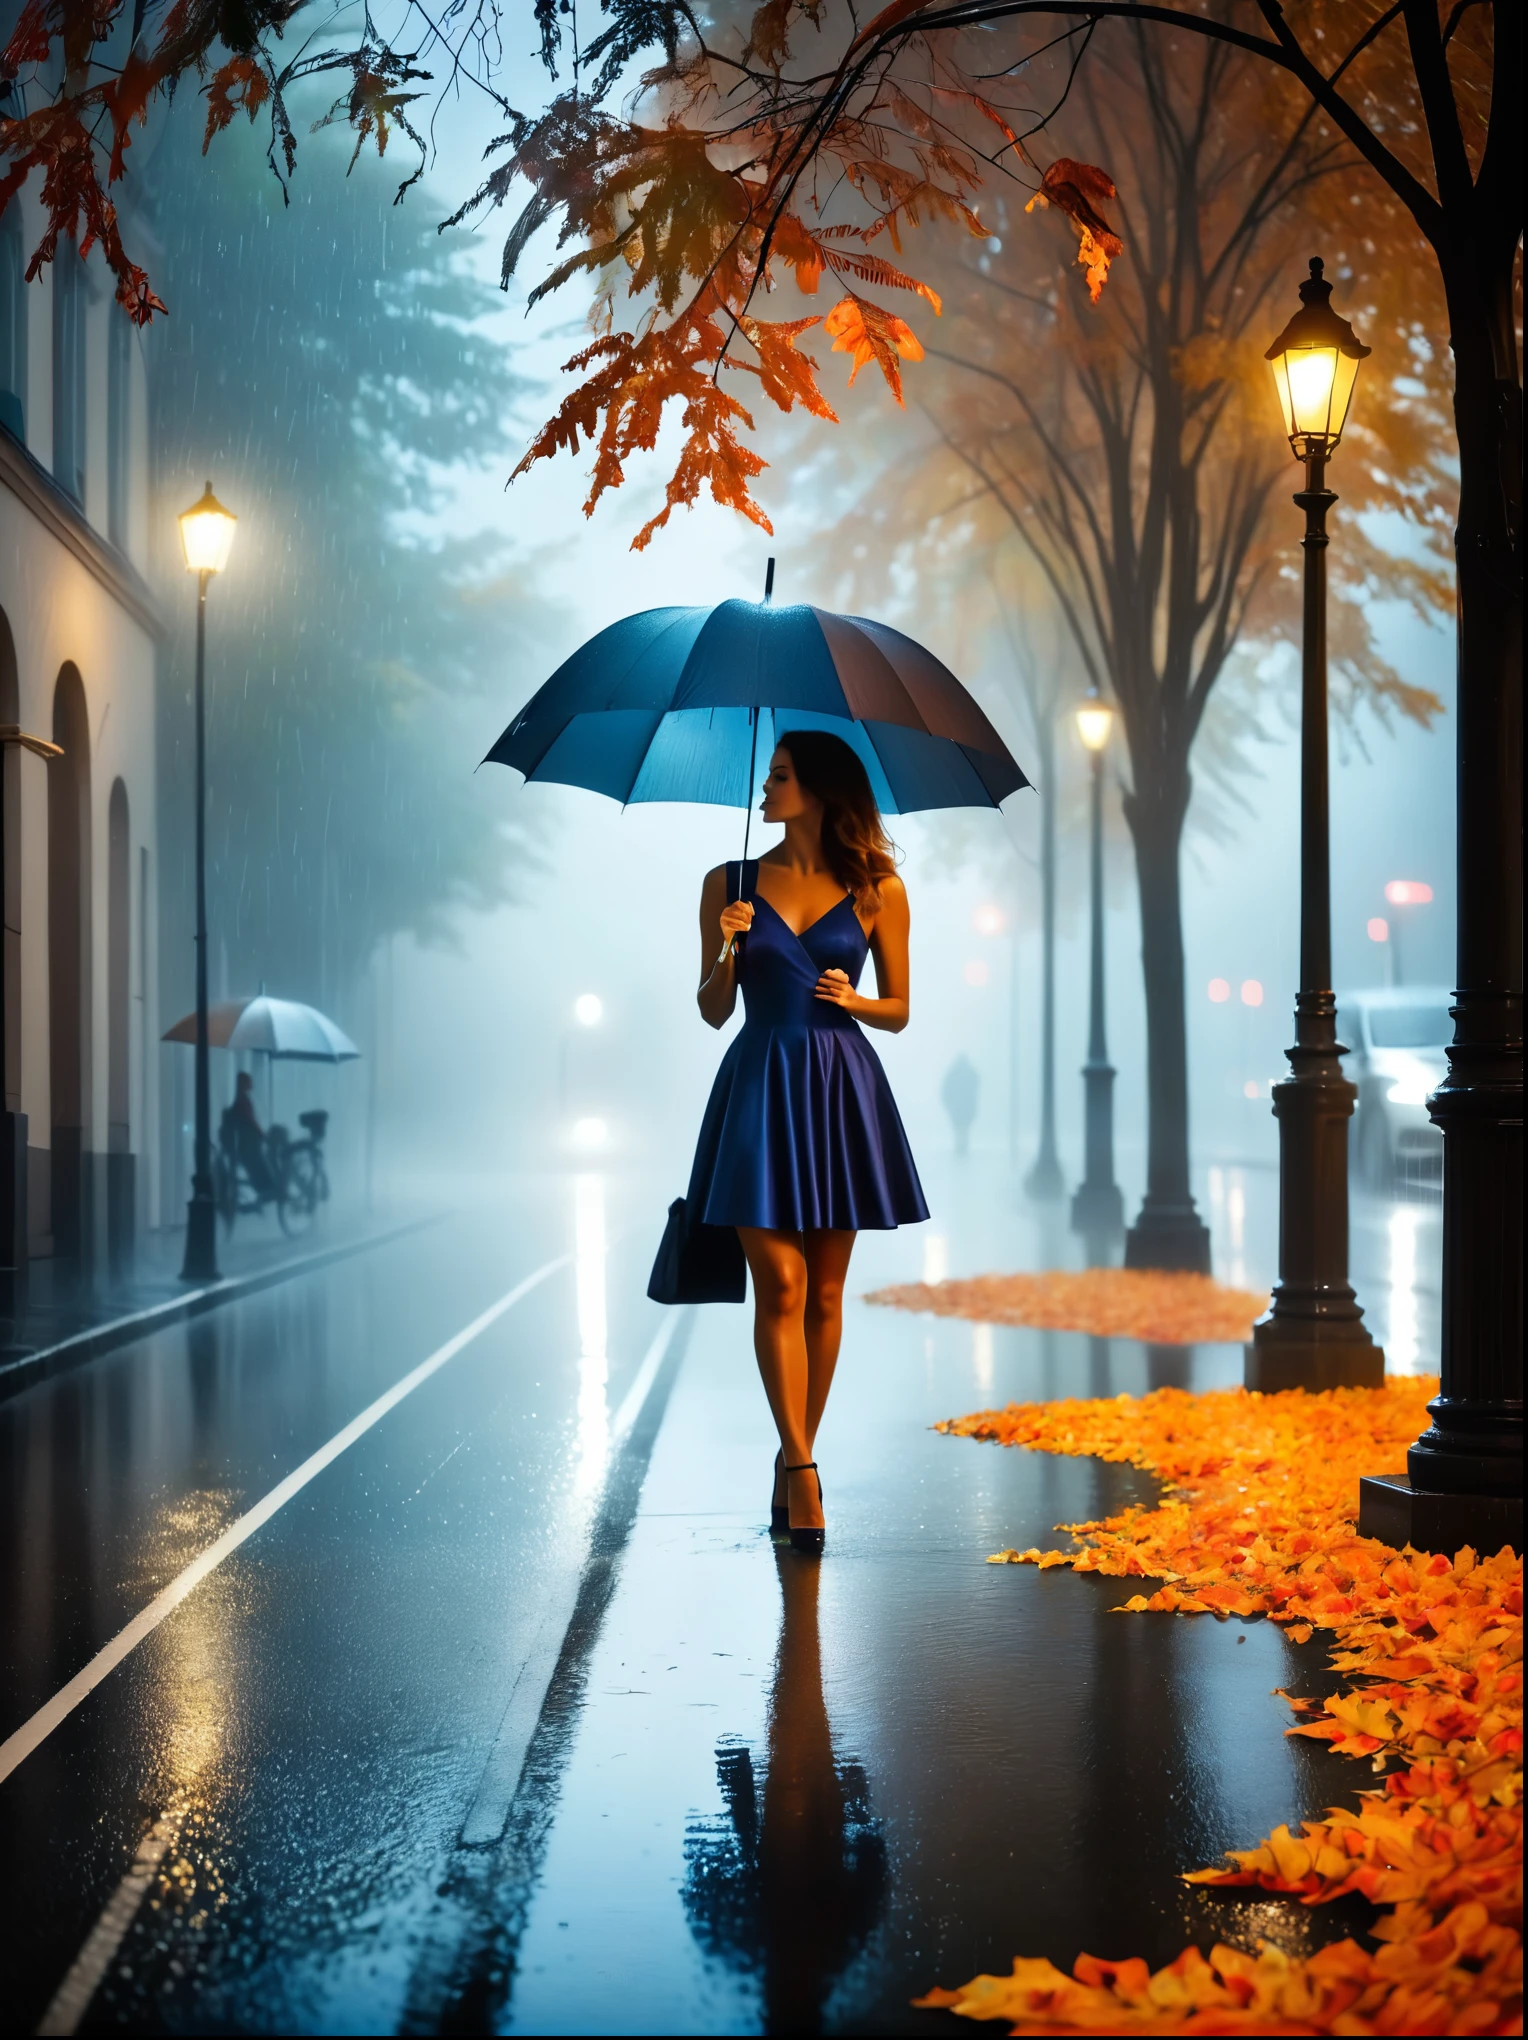 Femme en robe moulante avec parapluie à la main, in einer brumeuxen Stadt, feuilles d&#39;automne colorées dans la rue, une photo de Kuno Veeber, Gagnant du concours Pixabay, art conceptuel, debout sous la pluie, mysterious femme, jolie fille, qui se tient sous la pluie, personne seule avec un parapluie, femme ((silhouette)), ((brumeux)) et pluvieux, image féminine dans l’ombre, dans un environnement pluvieux, climat pluvieux, Routes pluvieuses en arrière-plan , ((Brouillard de lumière)), ((vue de derrière)), lumière de face